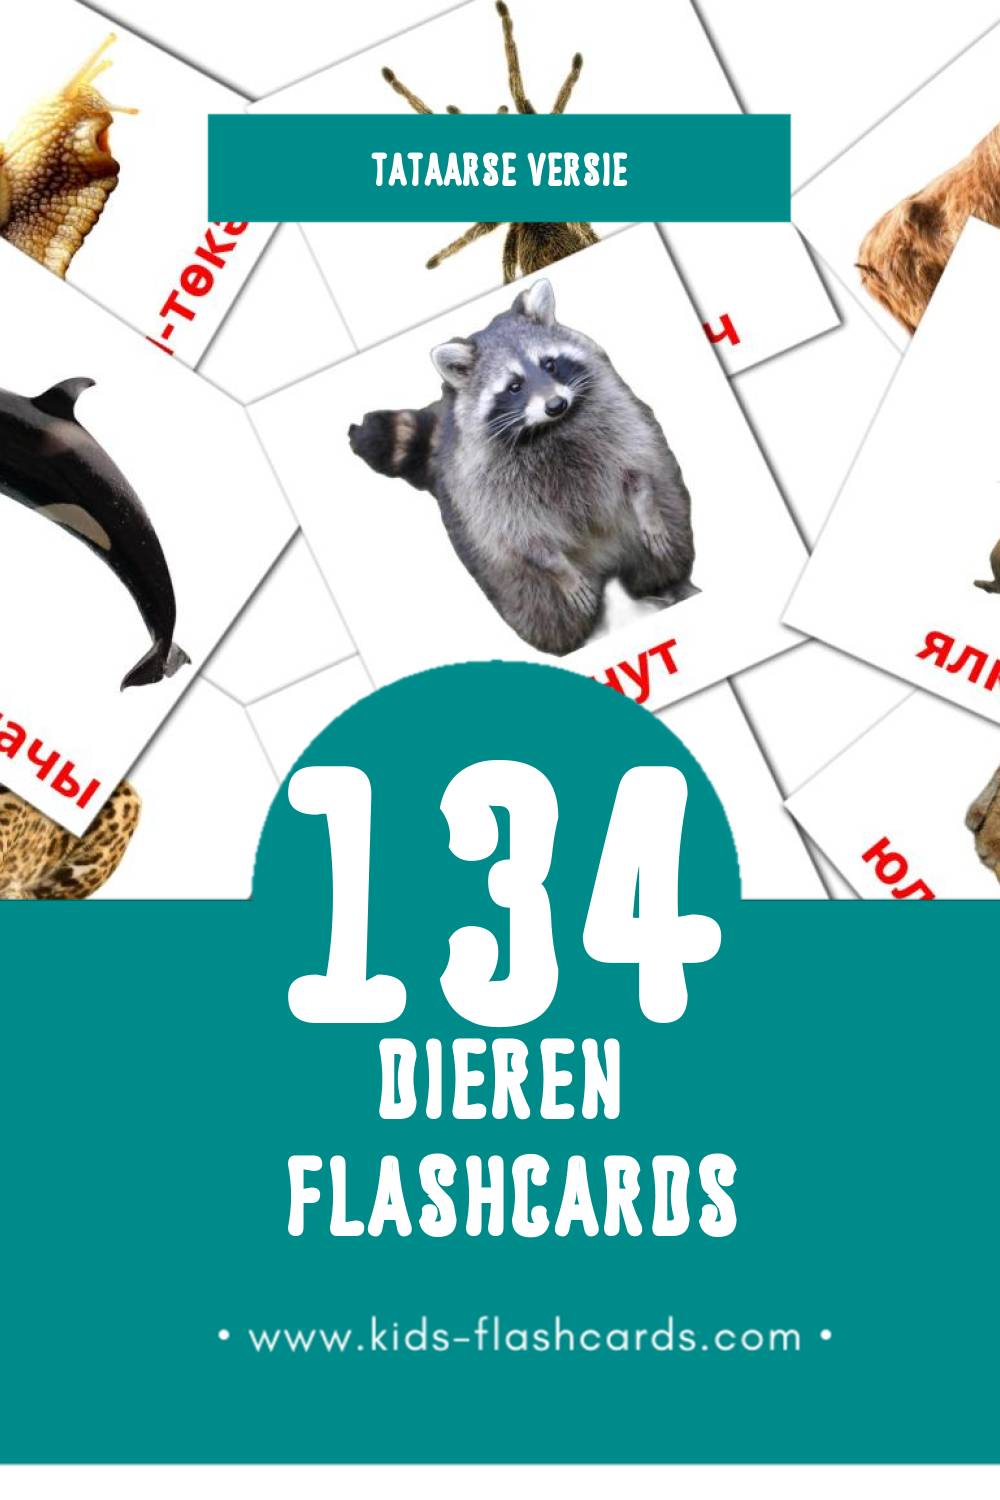 Visuele Хайваннар Flashcards voor Kleuters (134 kaarten in het Tataars)